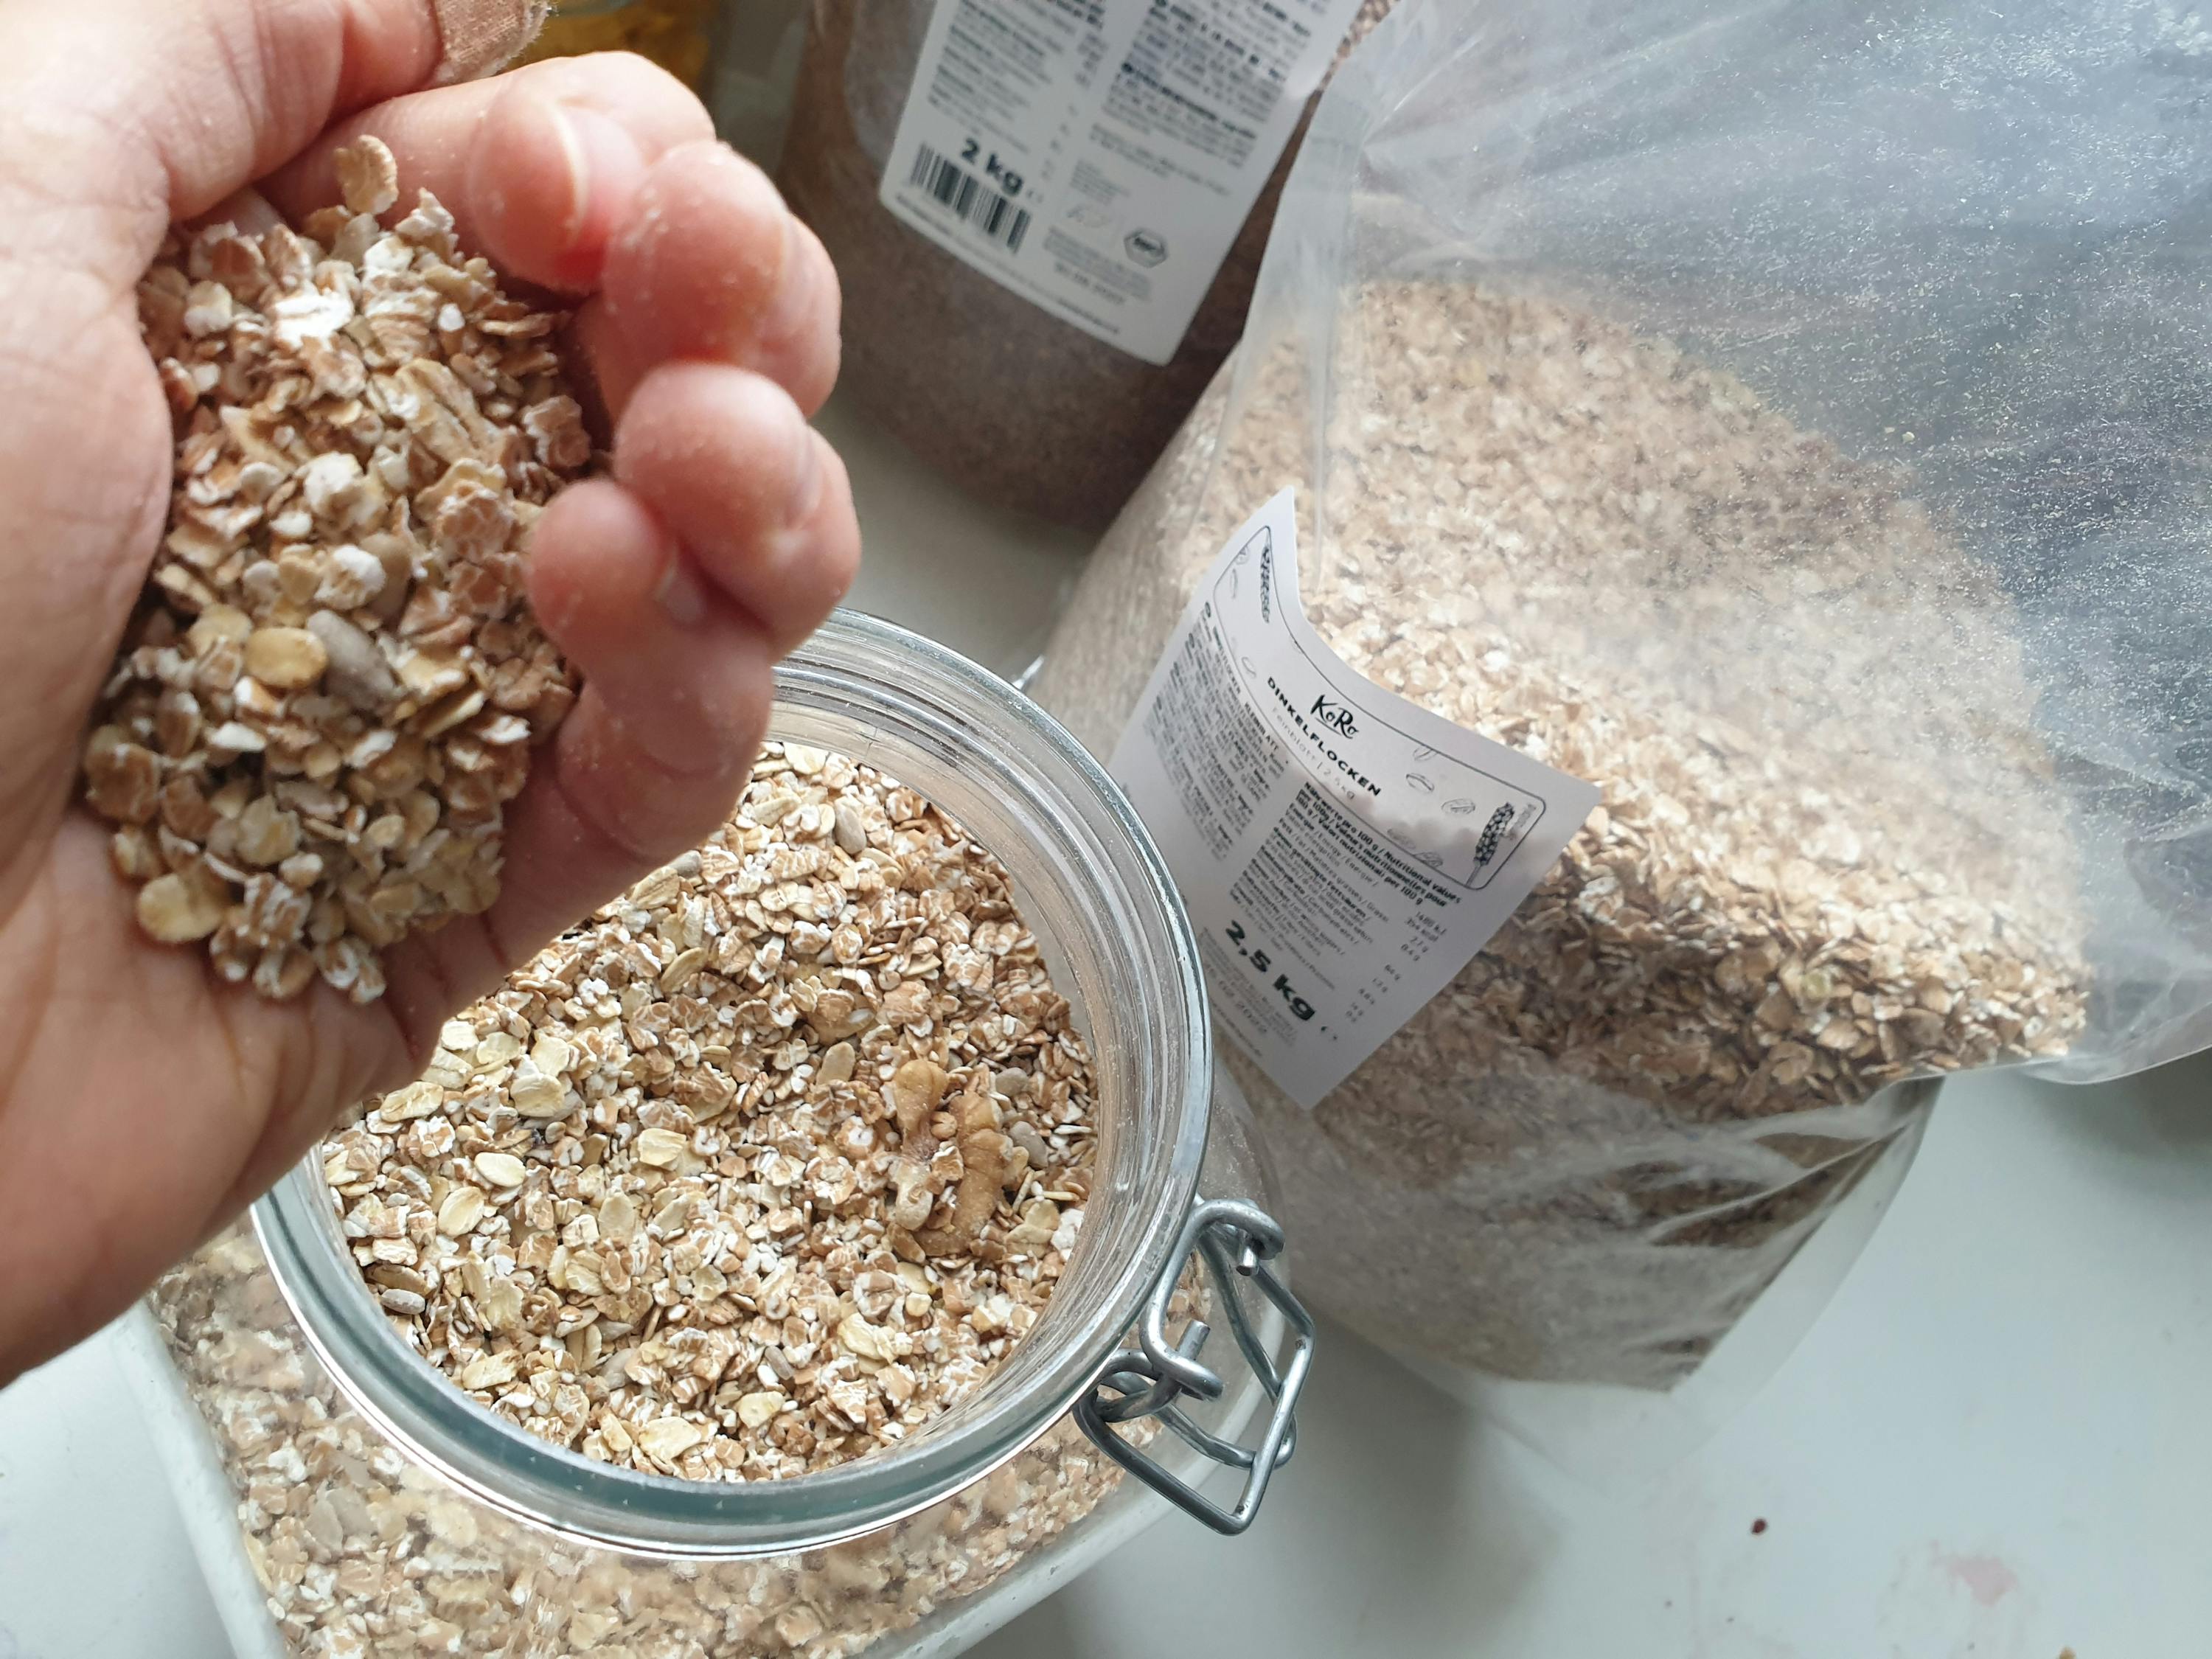 Graines de lin bio4,60€/kg – Savons et Petits Pois